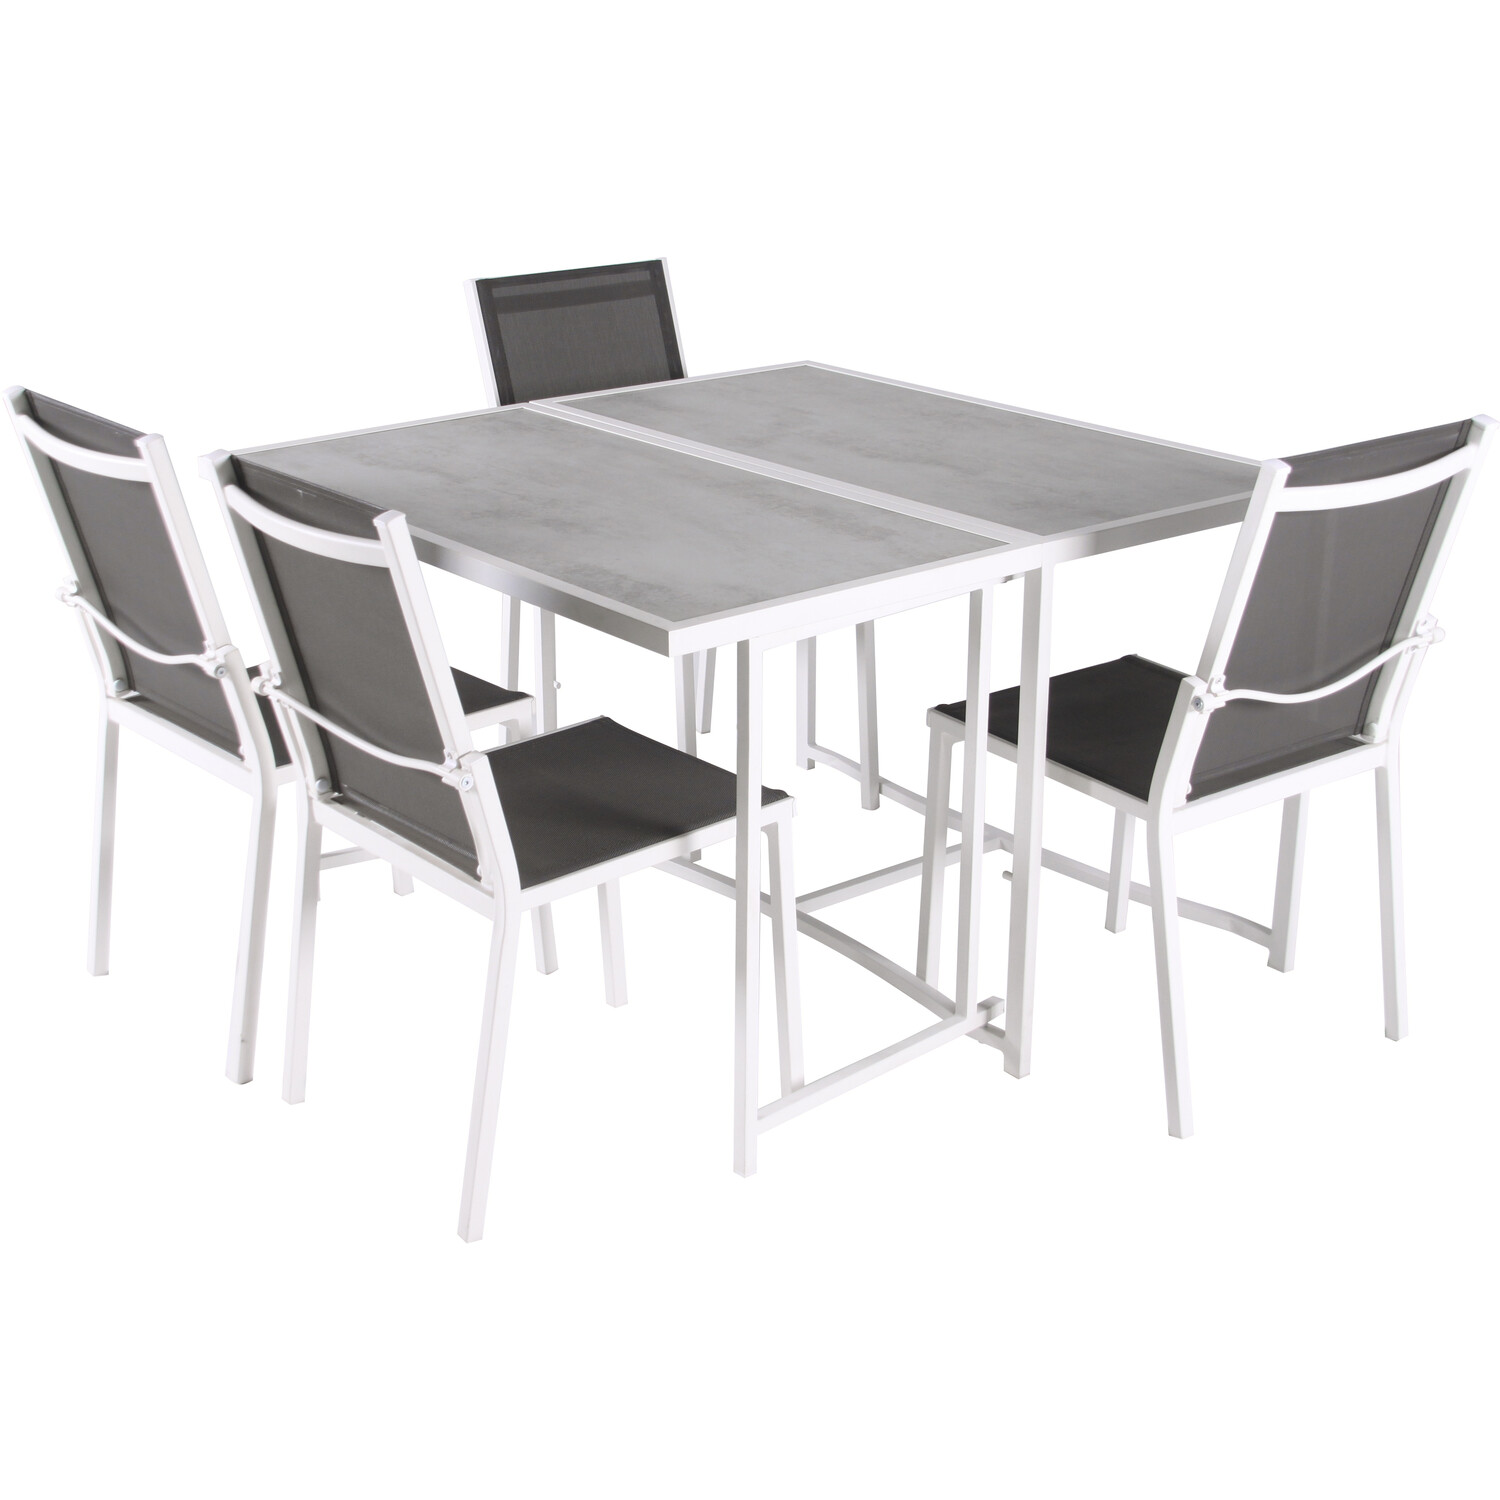 Milan 4 Seater Foldable Dining Set Image 8